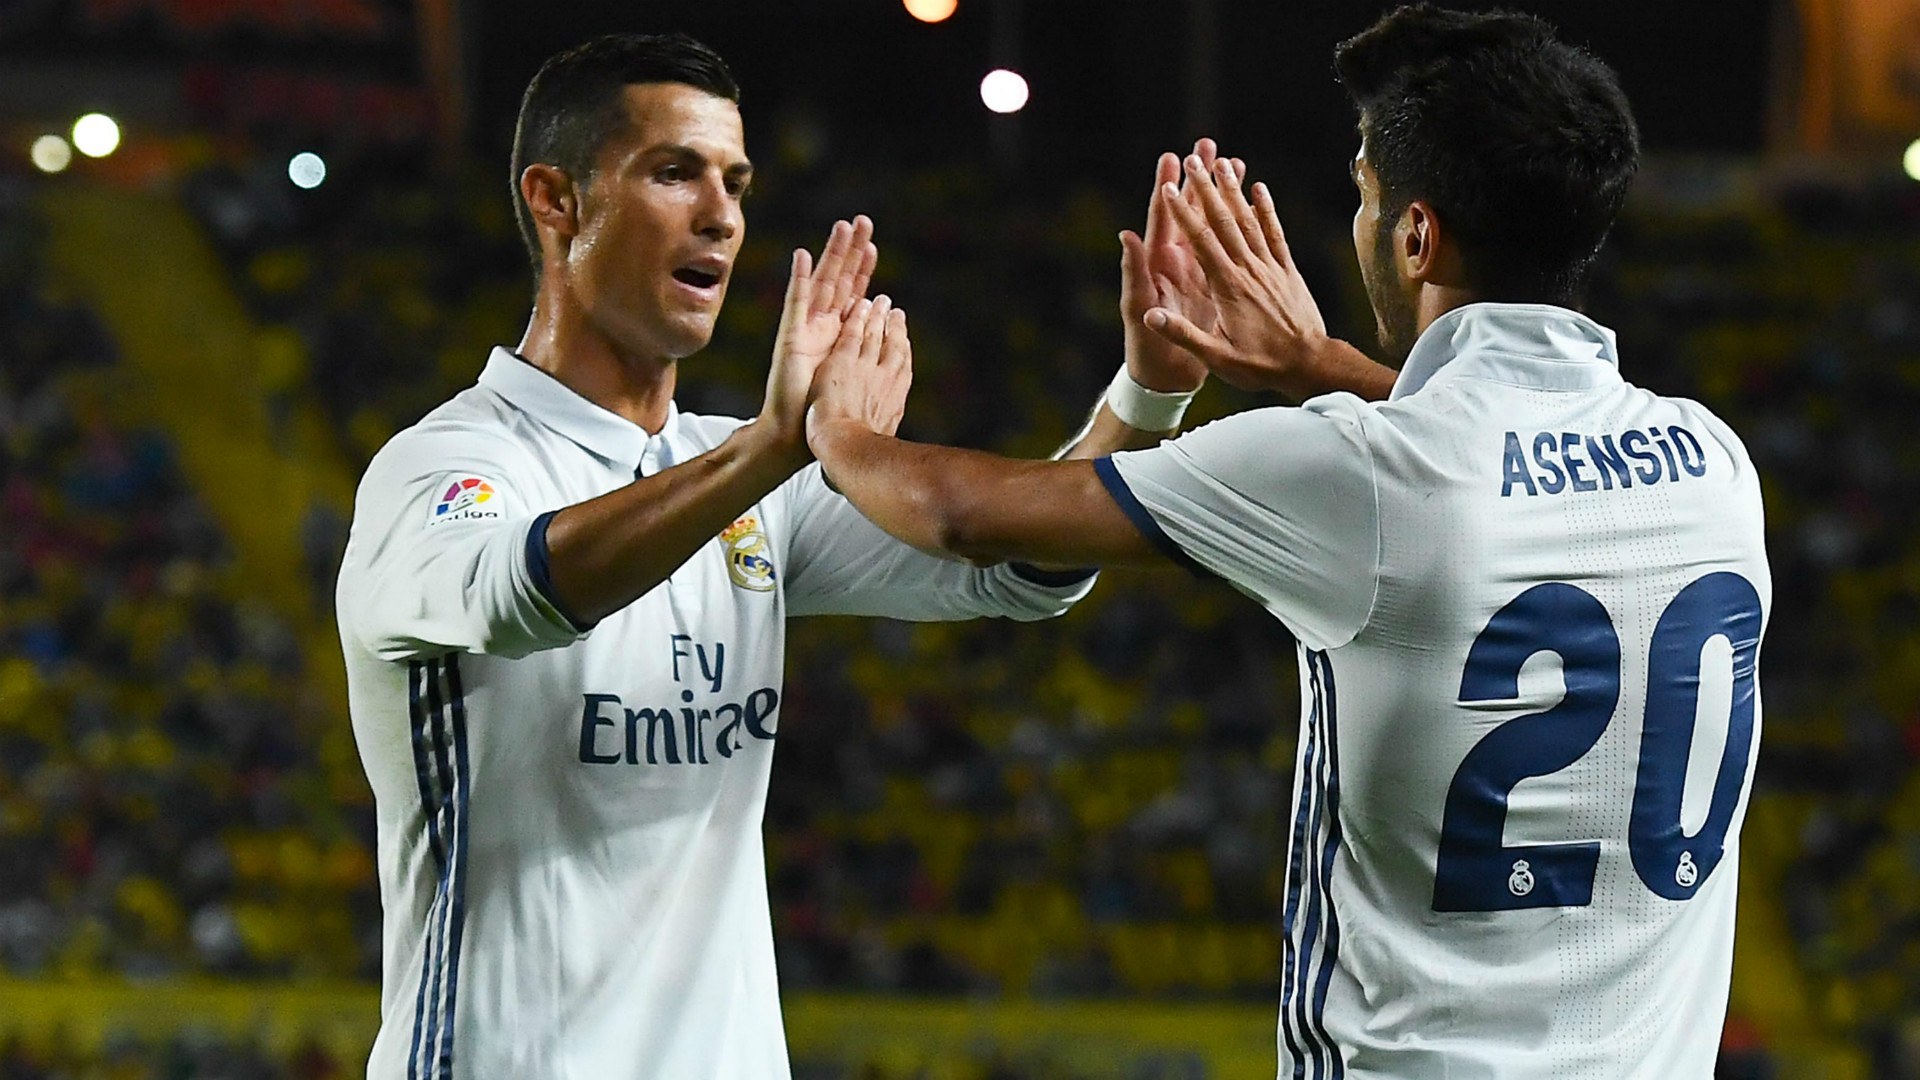 Thần đồng Marco Asensio ‘ăn đứt’ siêu sao Ronaldo và các huyền thoại Real ở tuổi 21